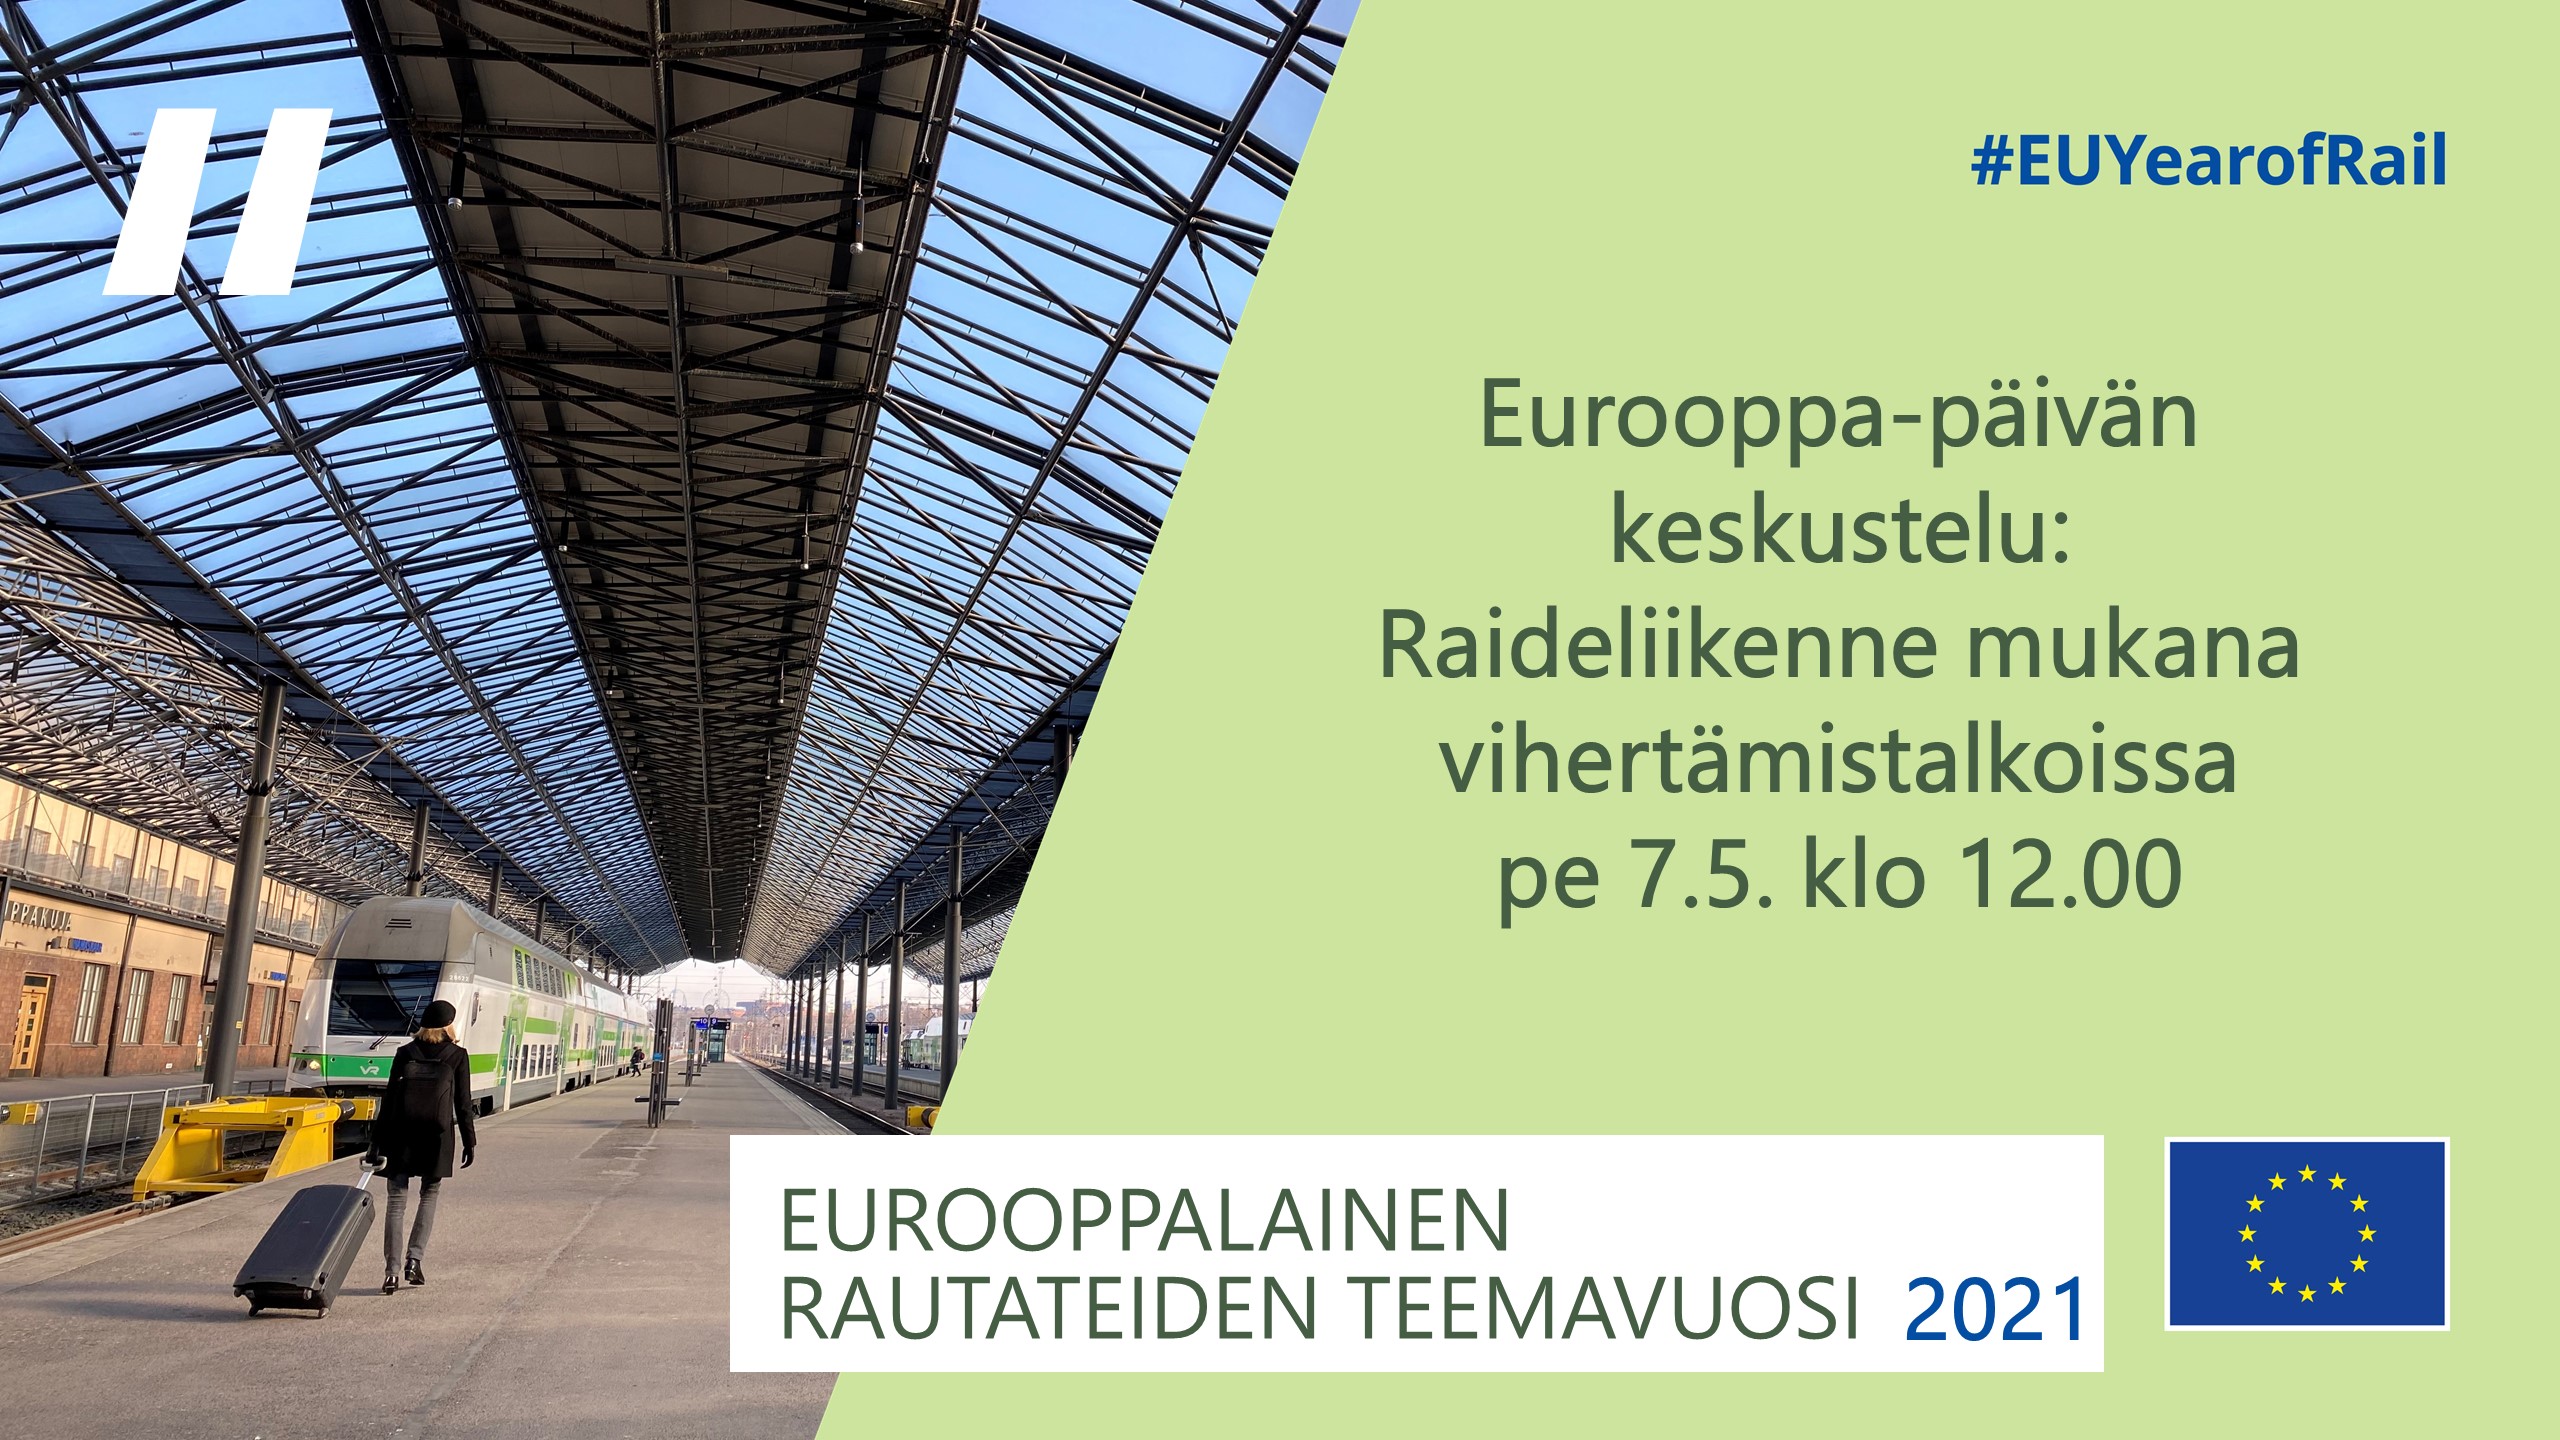 Euroopan rautatieliikenteen teemavuosi 2021 - keskustelutilaisuus 7.5.